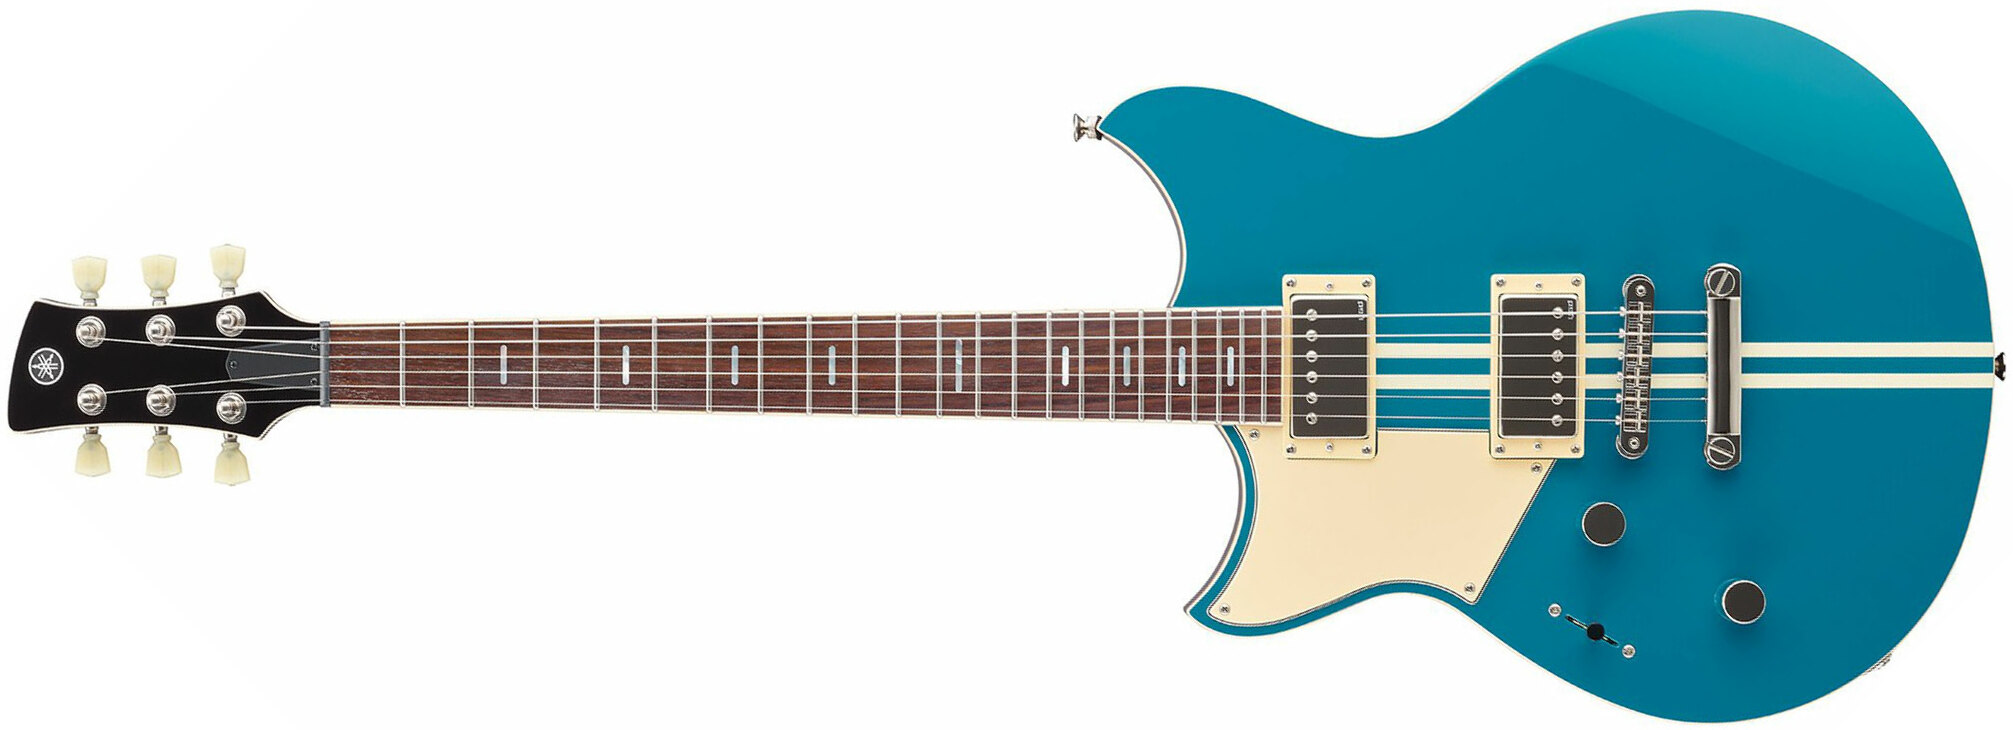 Yamaha Rss20l Revstar Standard Lh Gaucher Hh Ht Rw - Swift Blue - Linkshandige elektrische gitaar - Main picture